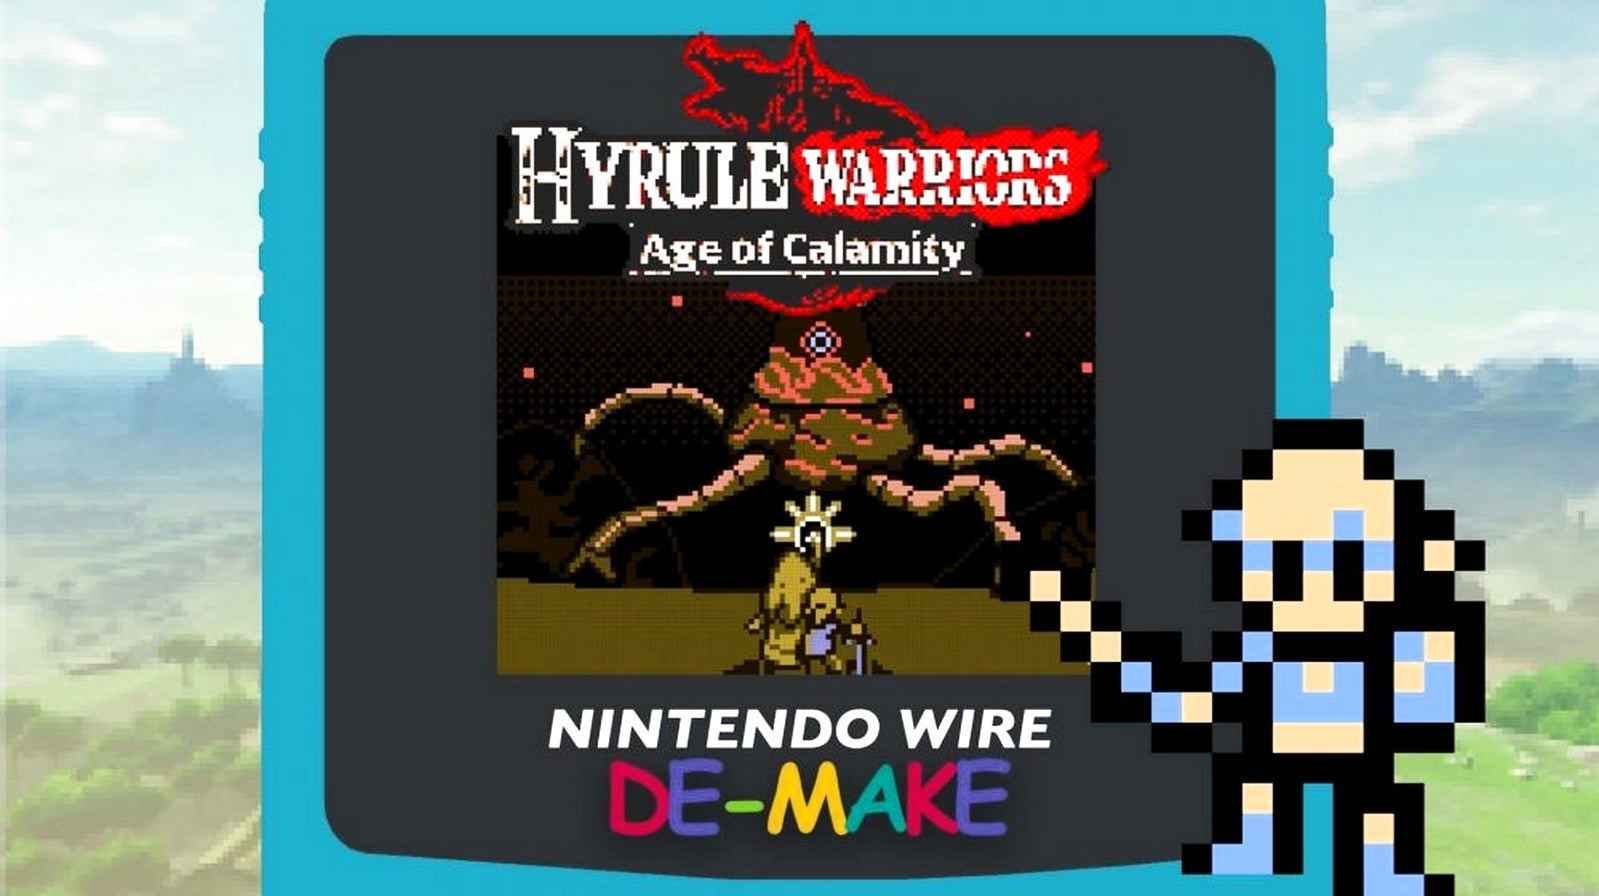 Bilder zu Wäre Hyrule Warriors: Zeit der Verheerung für den Game Boy erschienen, hätte es so aussehen können